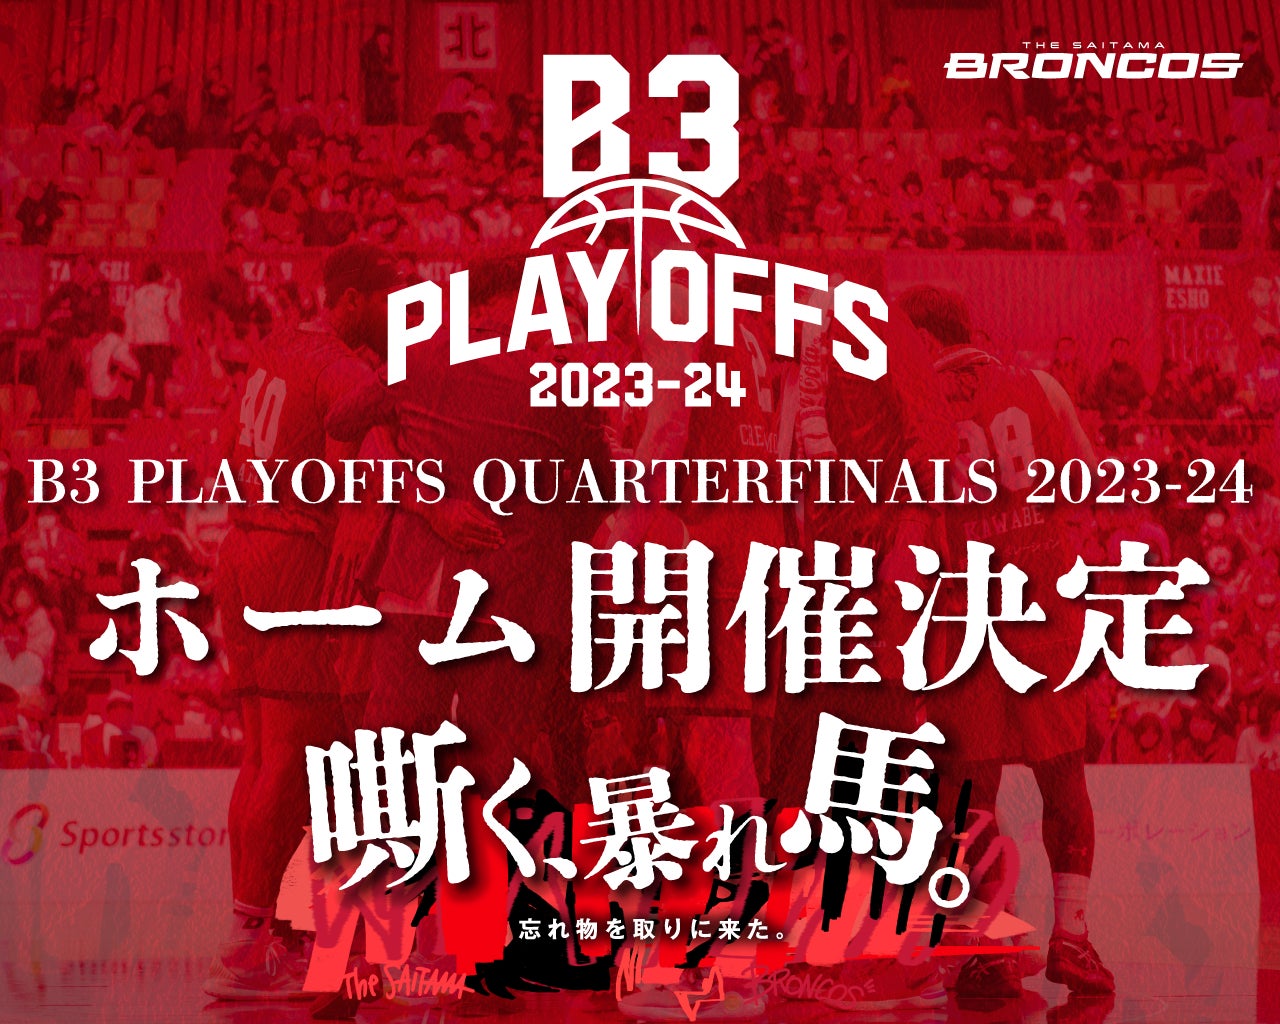 【さいたまブロンコス】 B3 PLAYOFFS QUARTERFINALS 2023-24ホーム開催決定のお知らせ